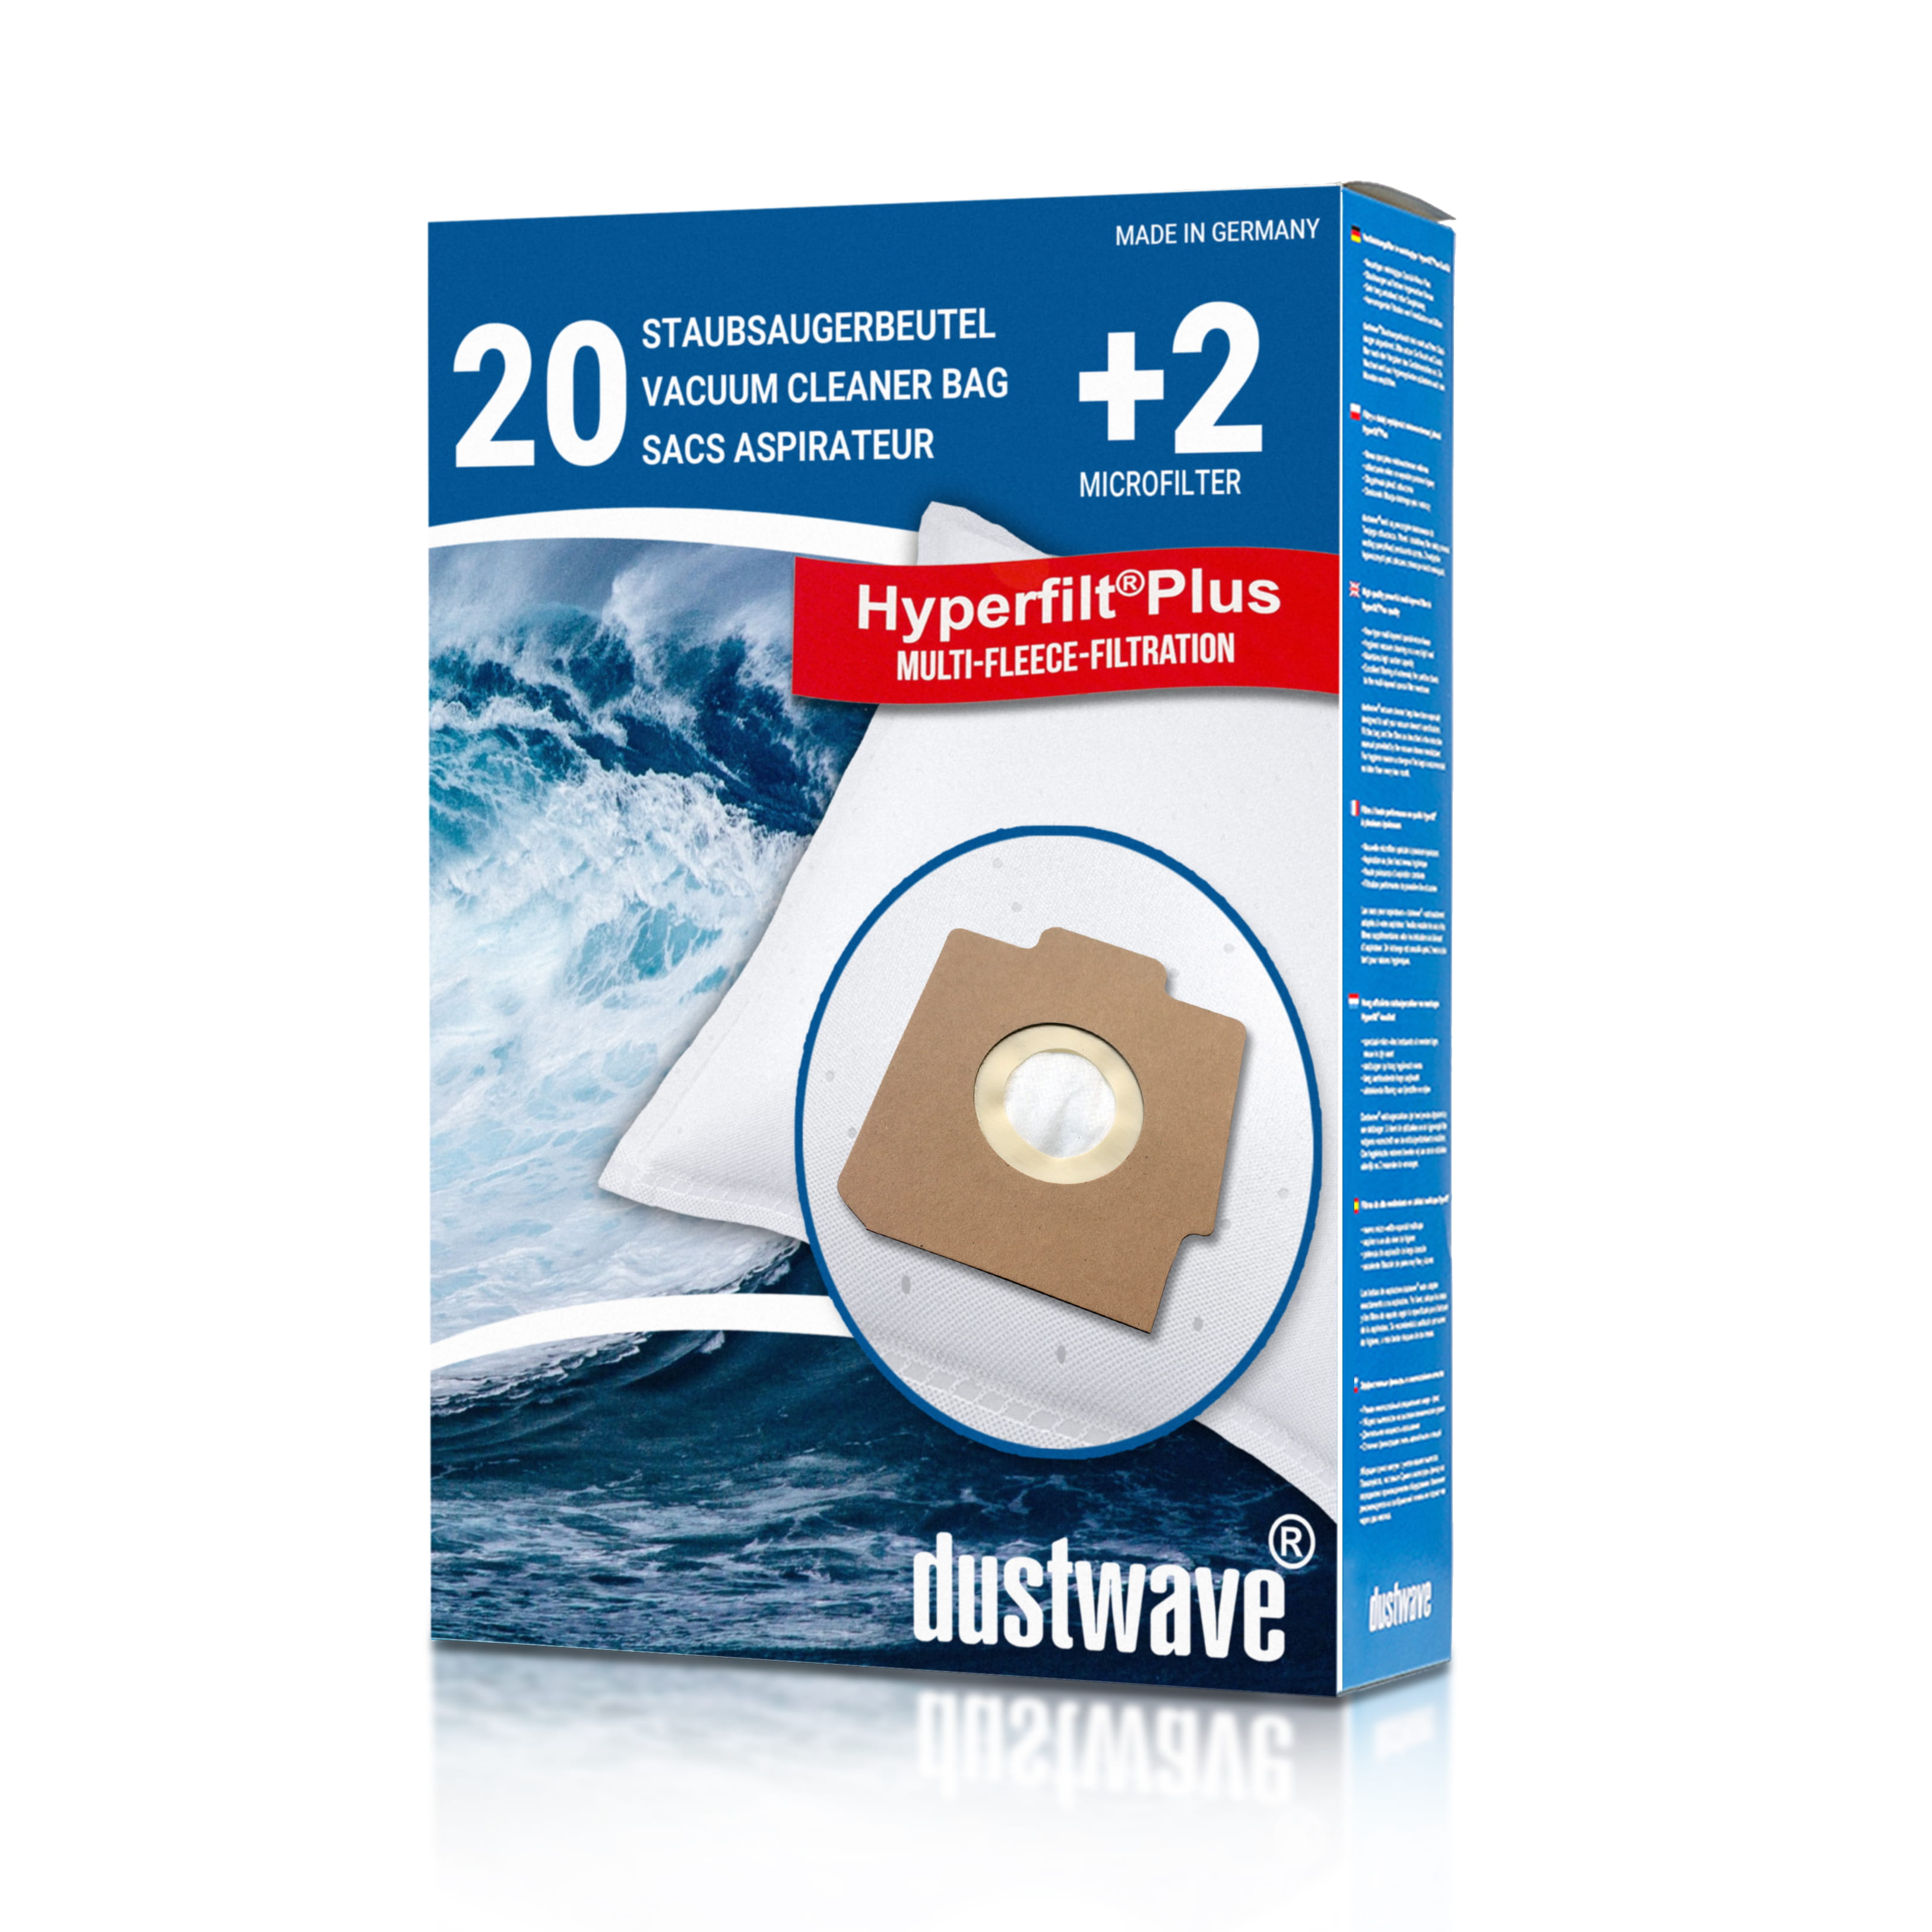 Dustwave® 20 Staubsaugerbeutel für Hoover S3448 091 / TRS3448091 - hocheffizient, mehrlagiges Mikrovlies mit Hygieneverschluss - Made in Germany